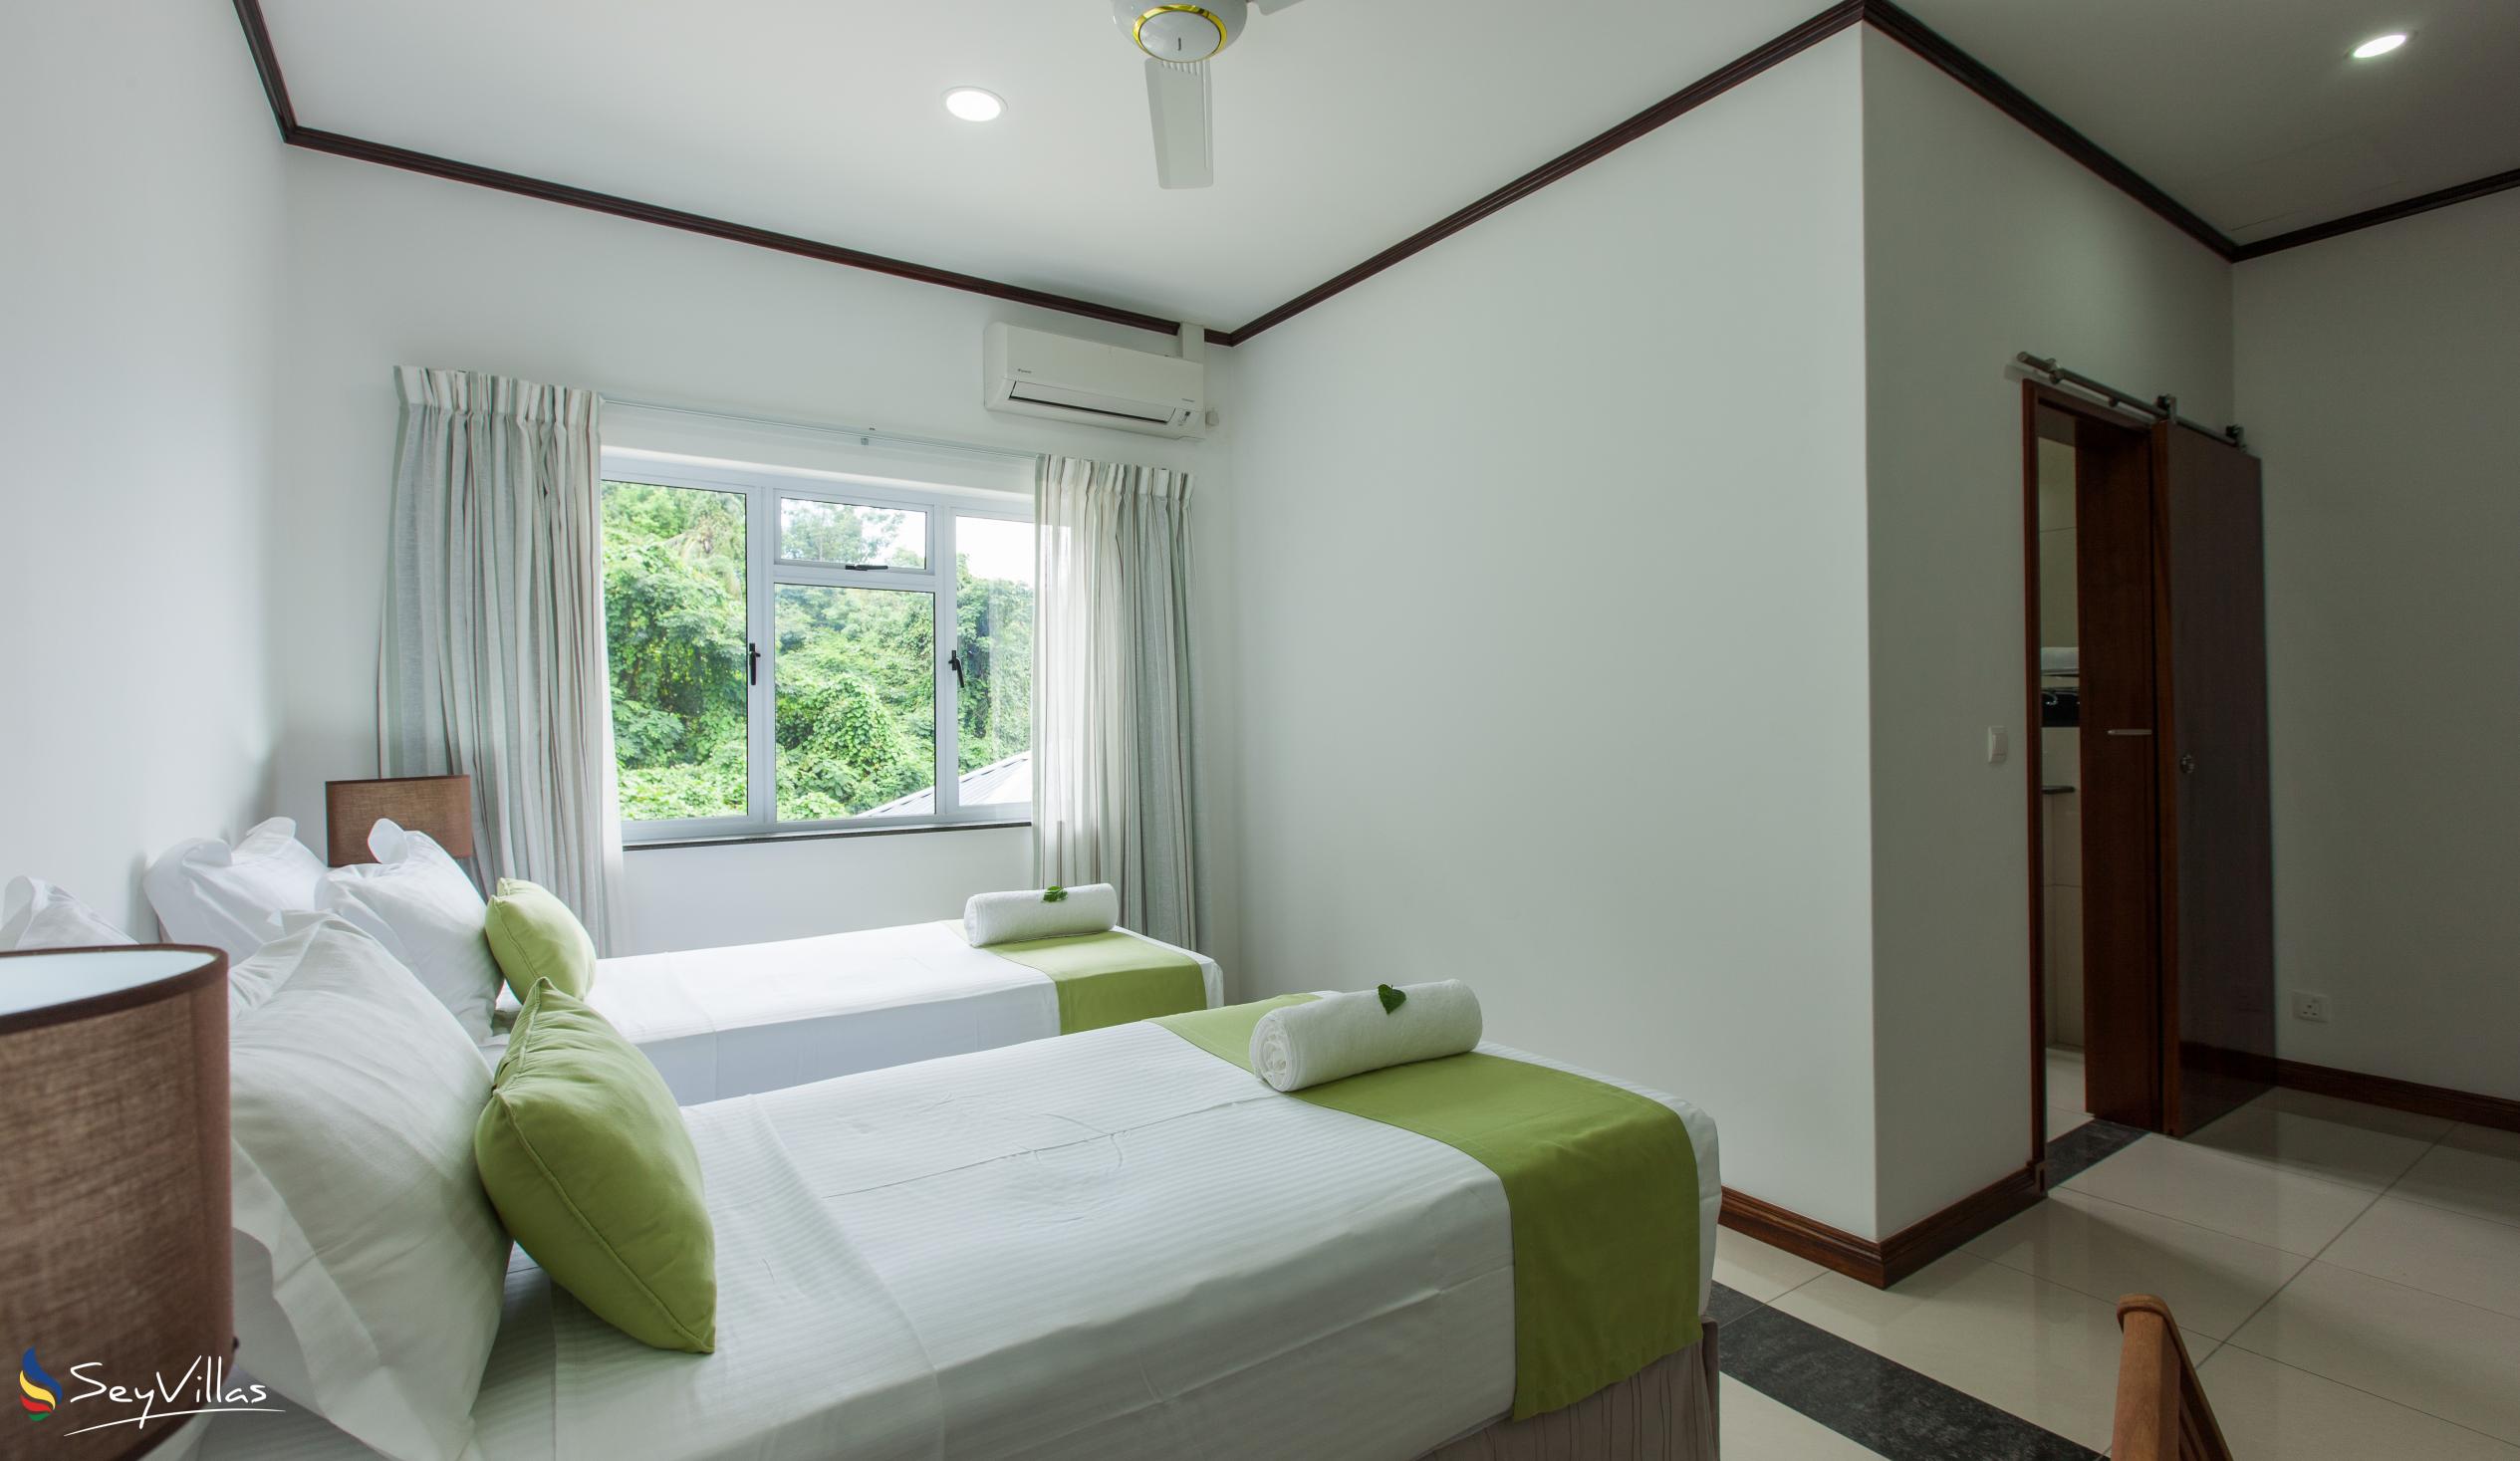 Foto 55: Bambous River Lodge - Appartement 2 chambres - Mahé (Seychelles)